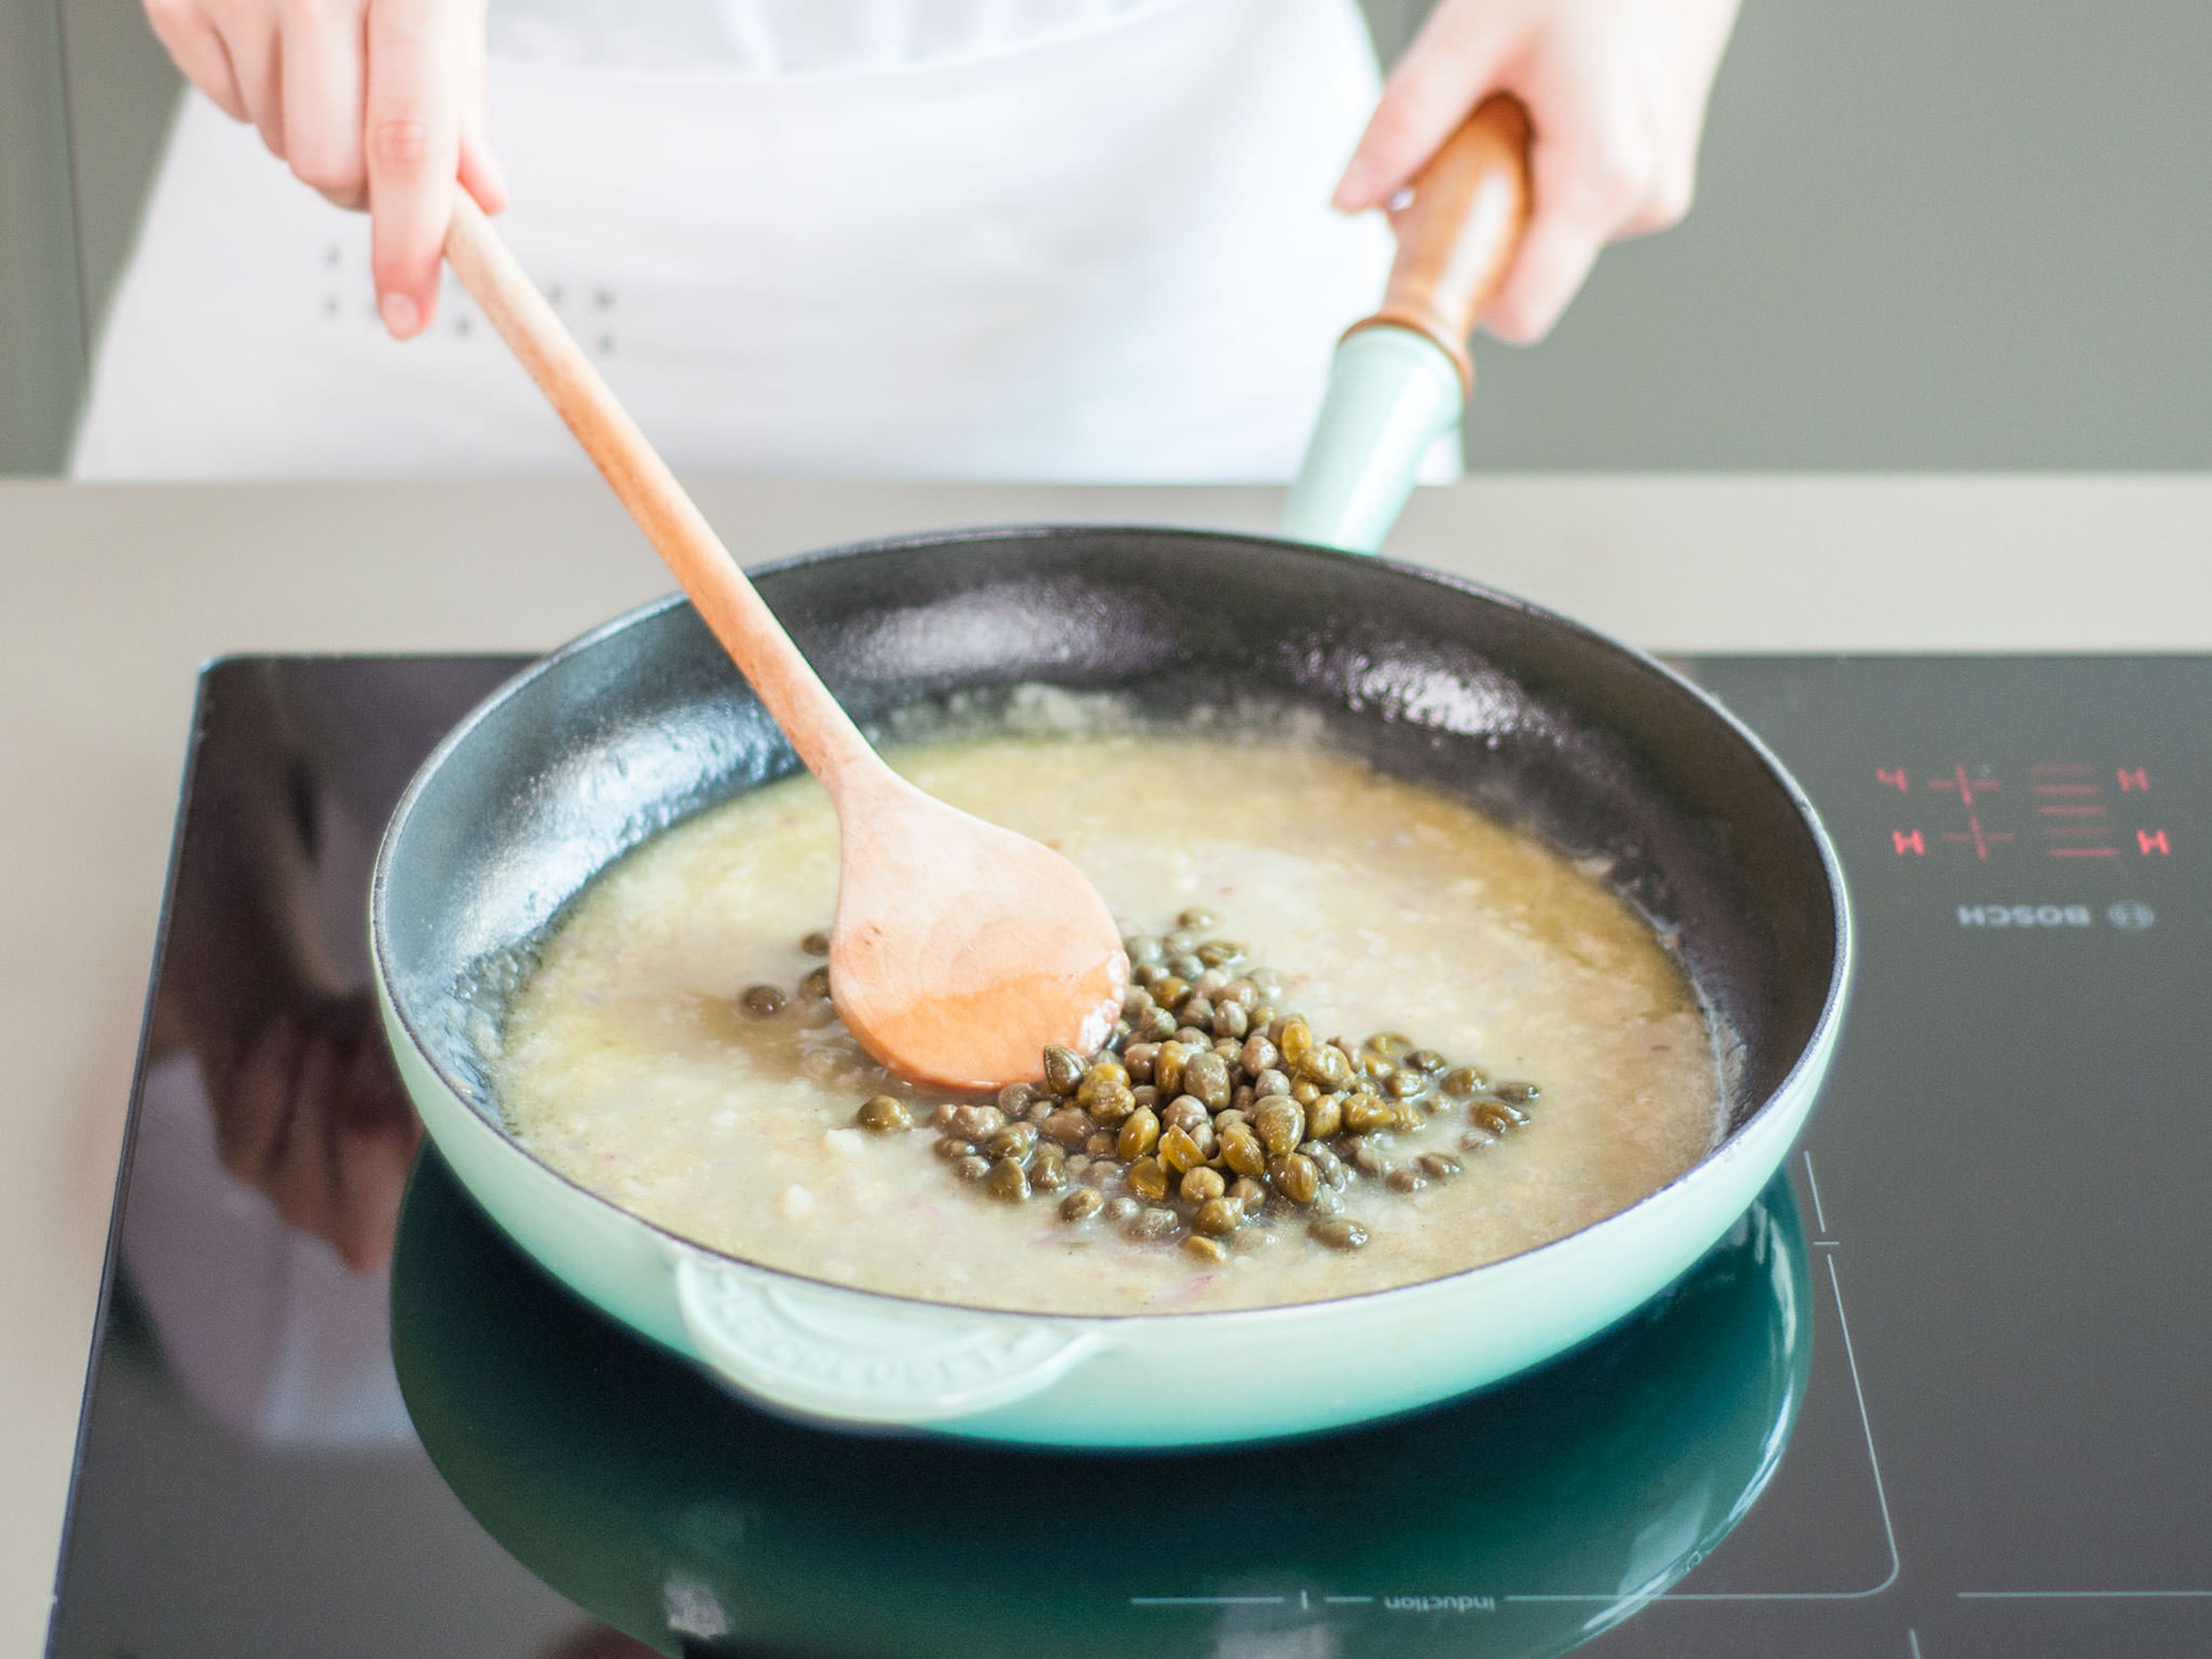 Olivenöl in einer Pfanne auf mittlerer Hitze erwärmen. Gehackten Knoblauch und Schalotte ca. 2 - 3 Min. anbraten bis sie duften. Danach auf mittlere bis hohe Hitze erhöhen und Weißwein in die Pfanne geben. Ca. 1 Min. köcheln lassen, danach Hühnerbrühe hinzugeben. Mehl einrühren und ca. 4 - 5 Min. köcheln lassen bis die Soße andickt. Zitronensaft, Kapern und Butter dazugeben und miteinander verrühren bis die Butter geschmolzen ist. Mit Salz und Pfeffer abschmecken.